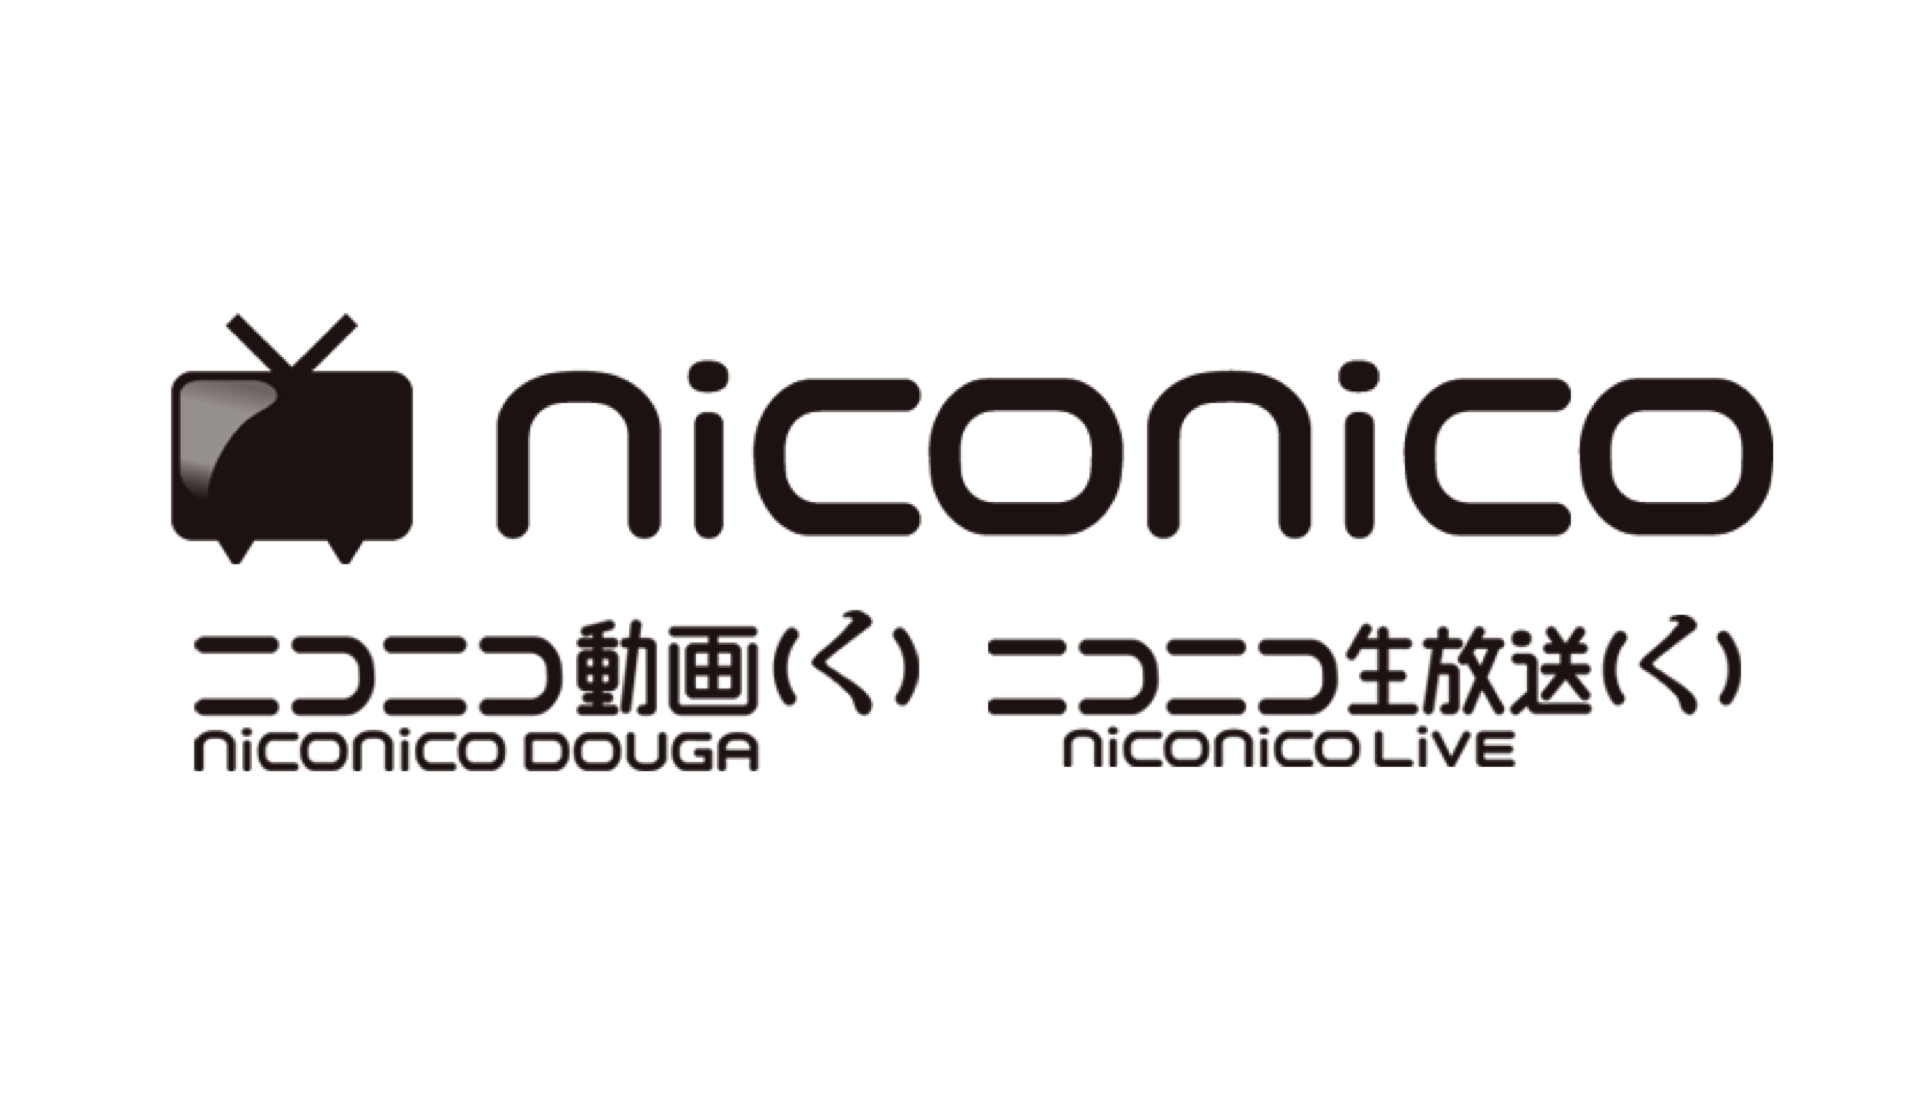 [B! niconico] niconicoは新たなバージョン(く)になりました|ニコニコインフォ